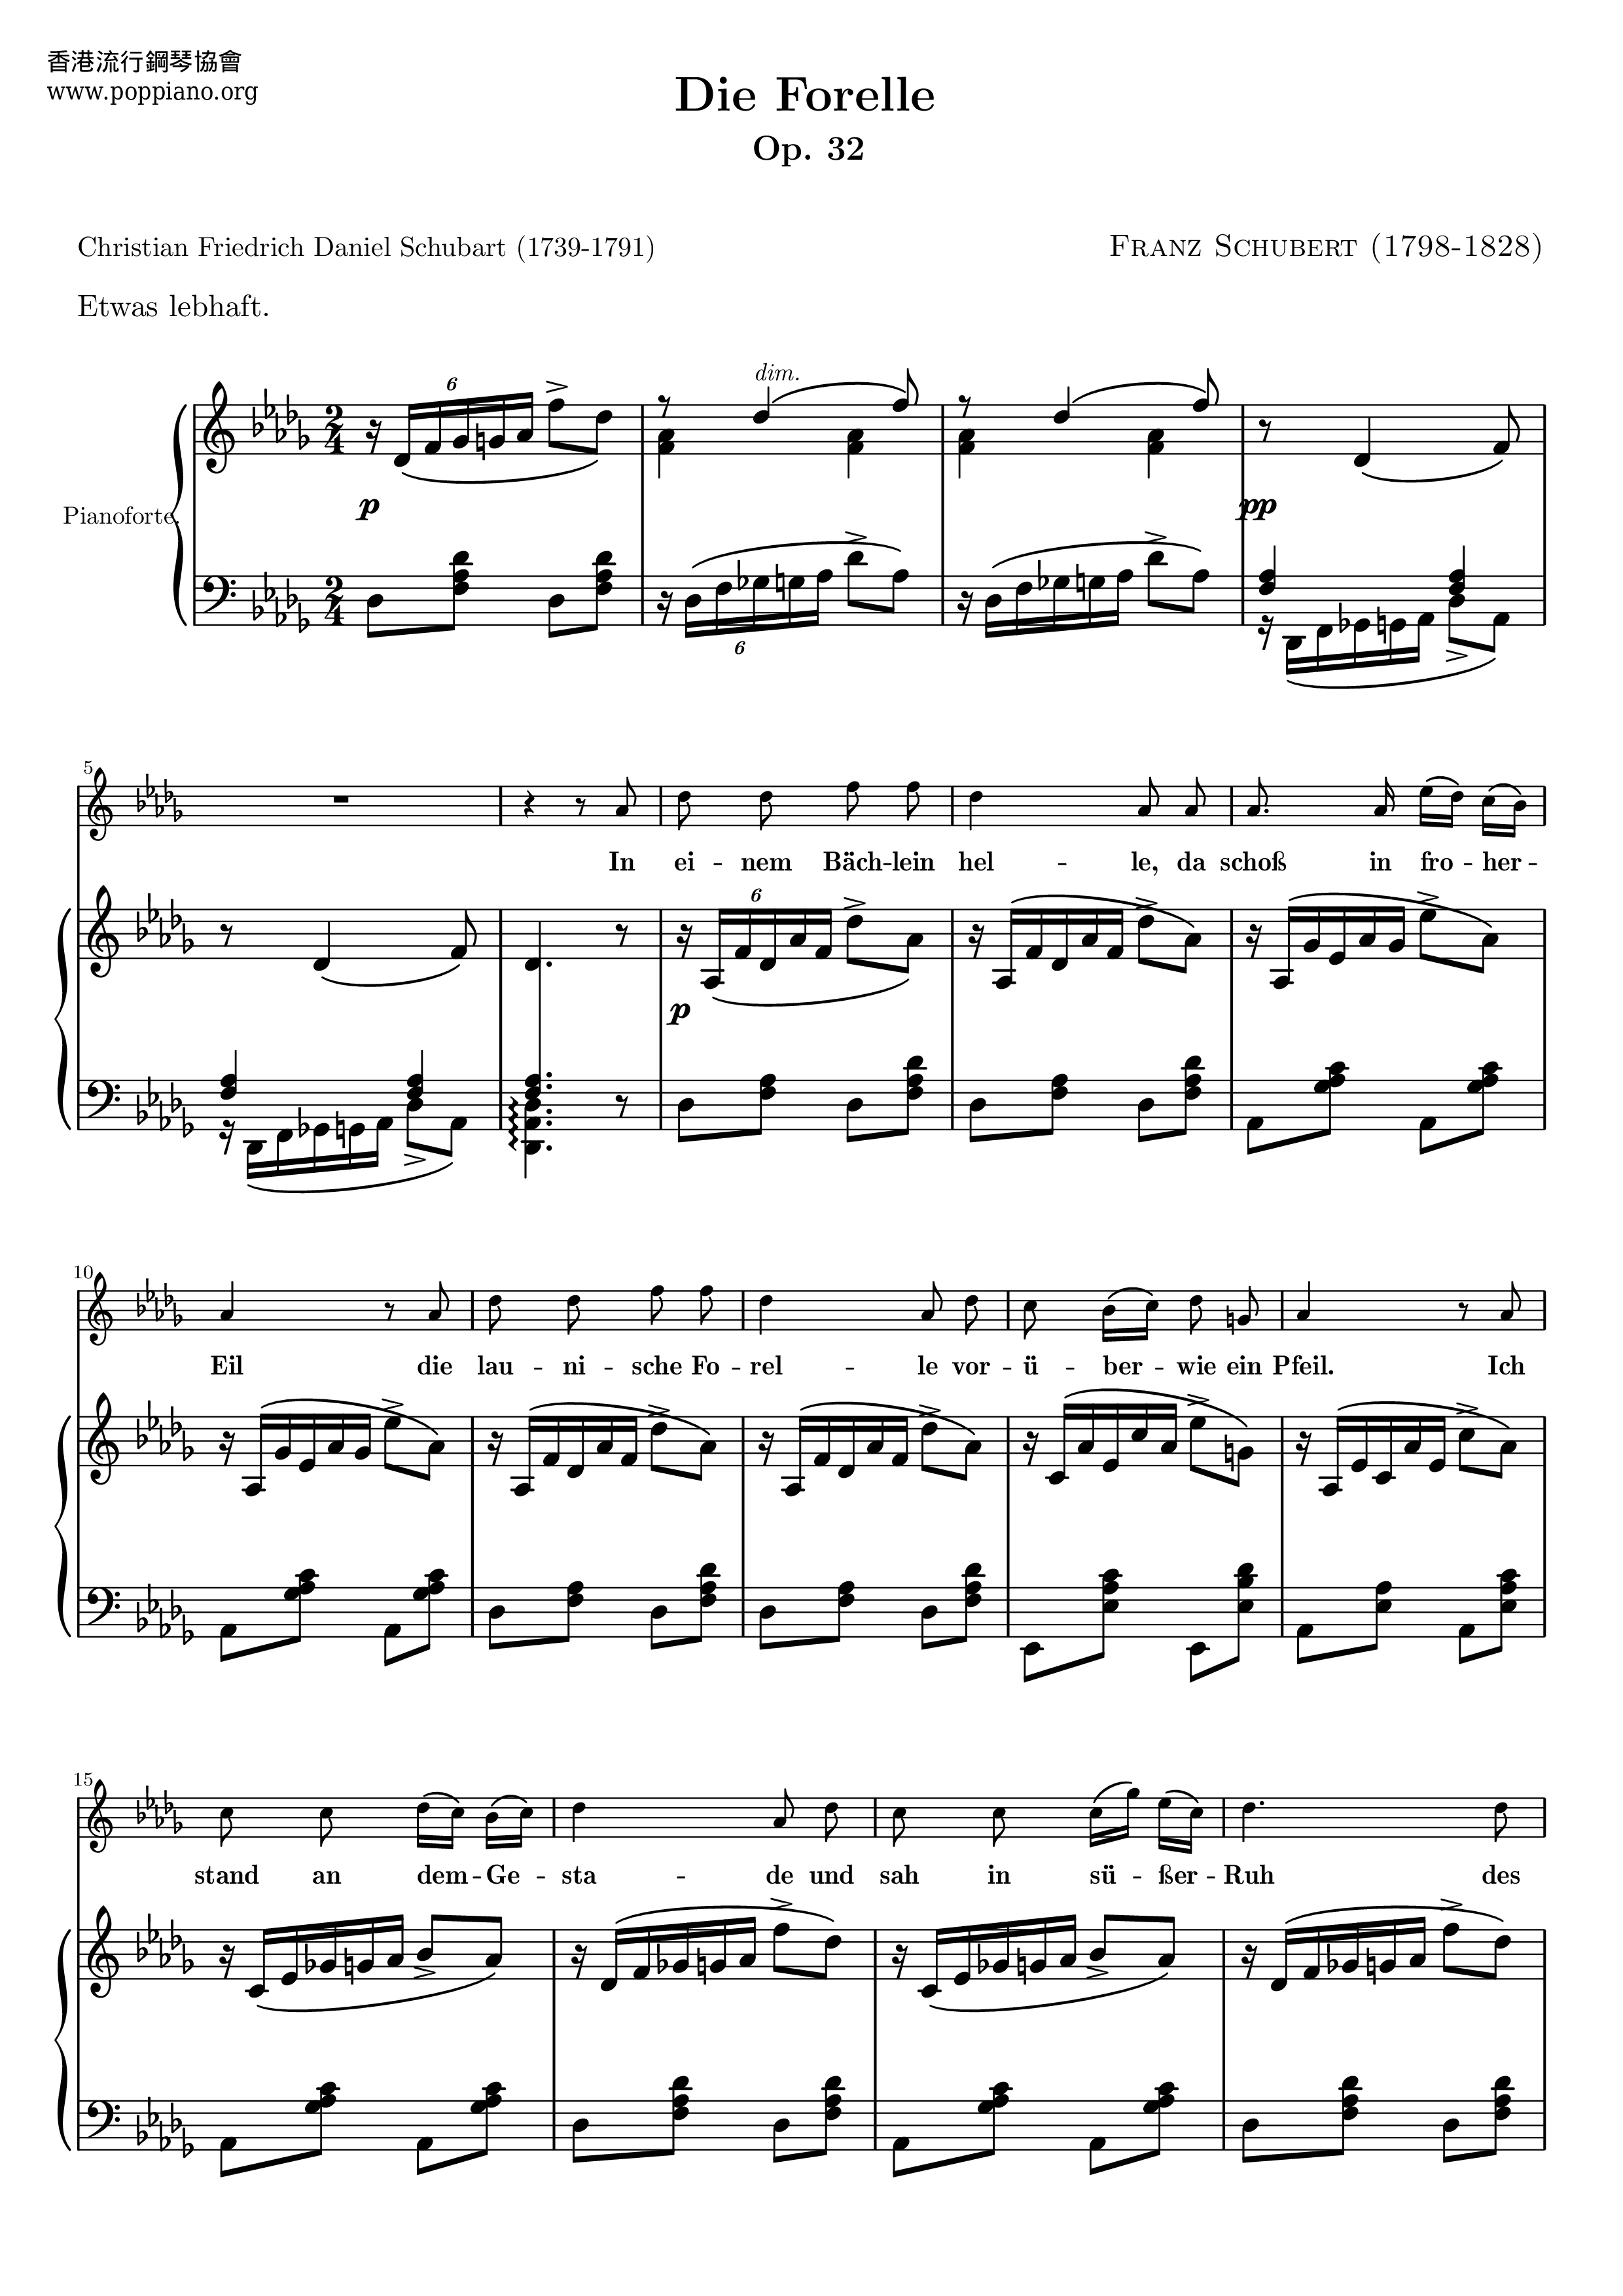 Die Forelle, Op.32 Score